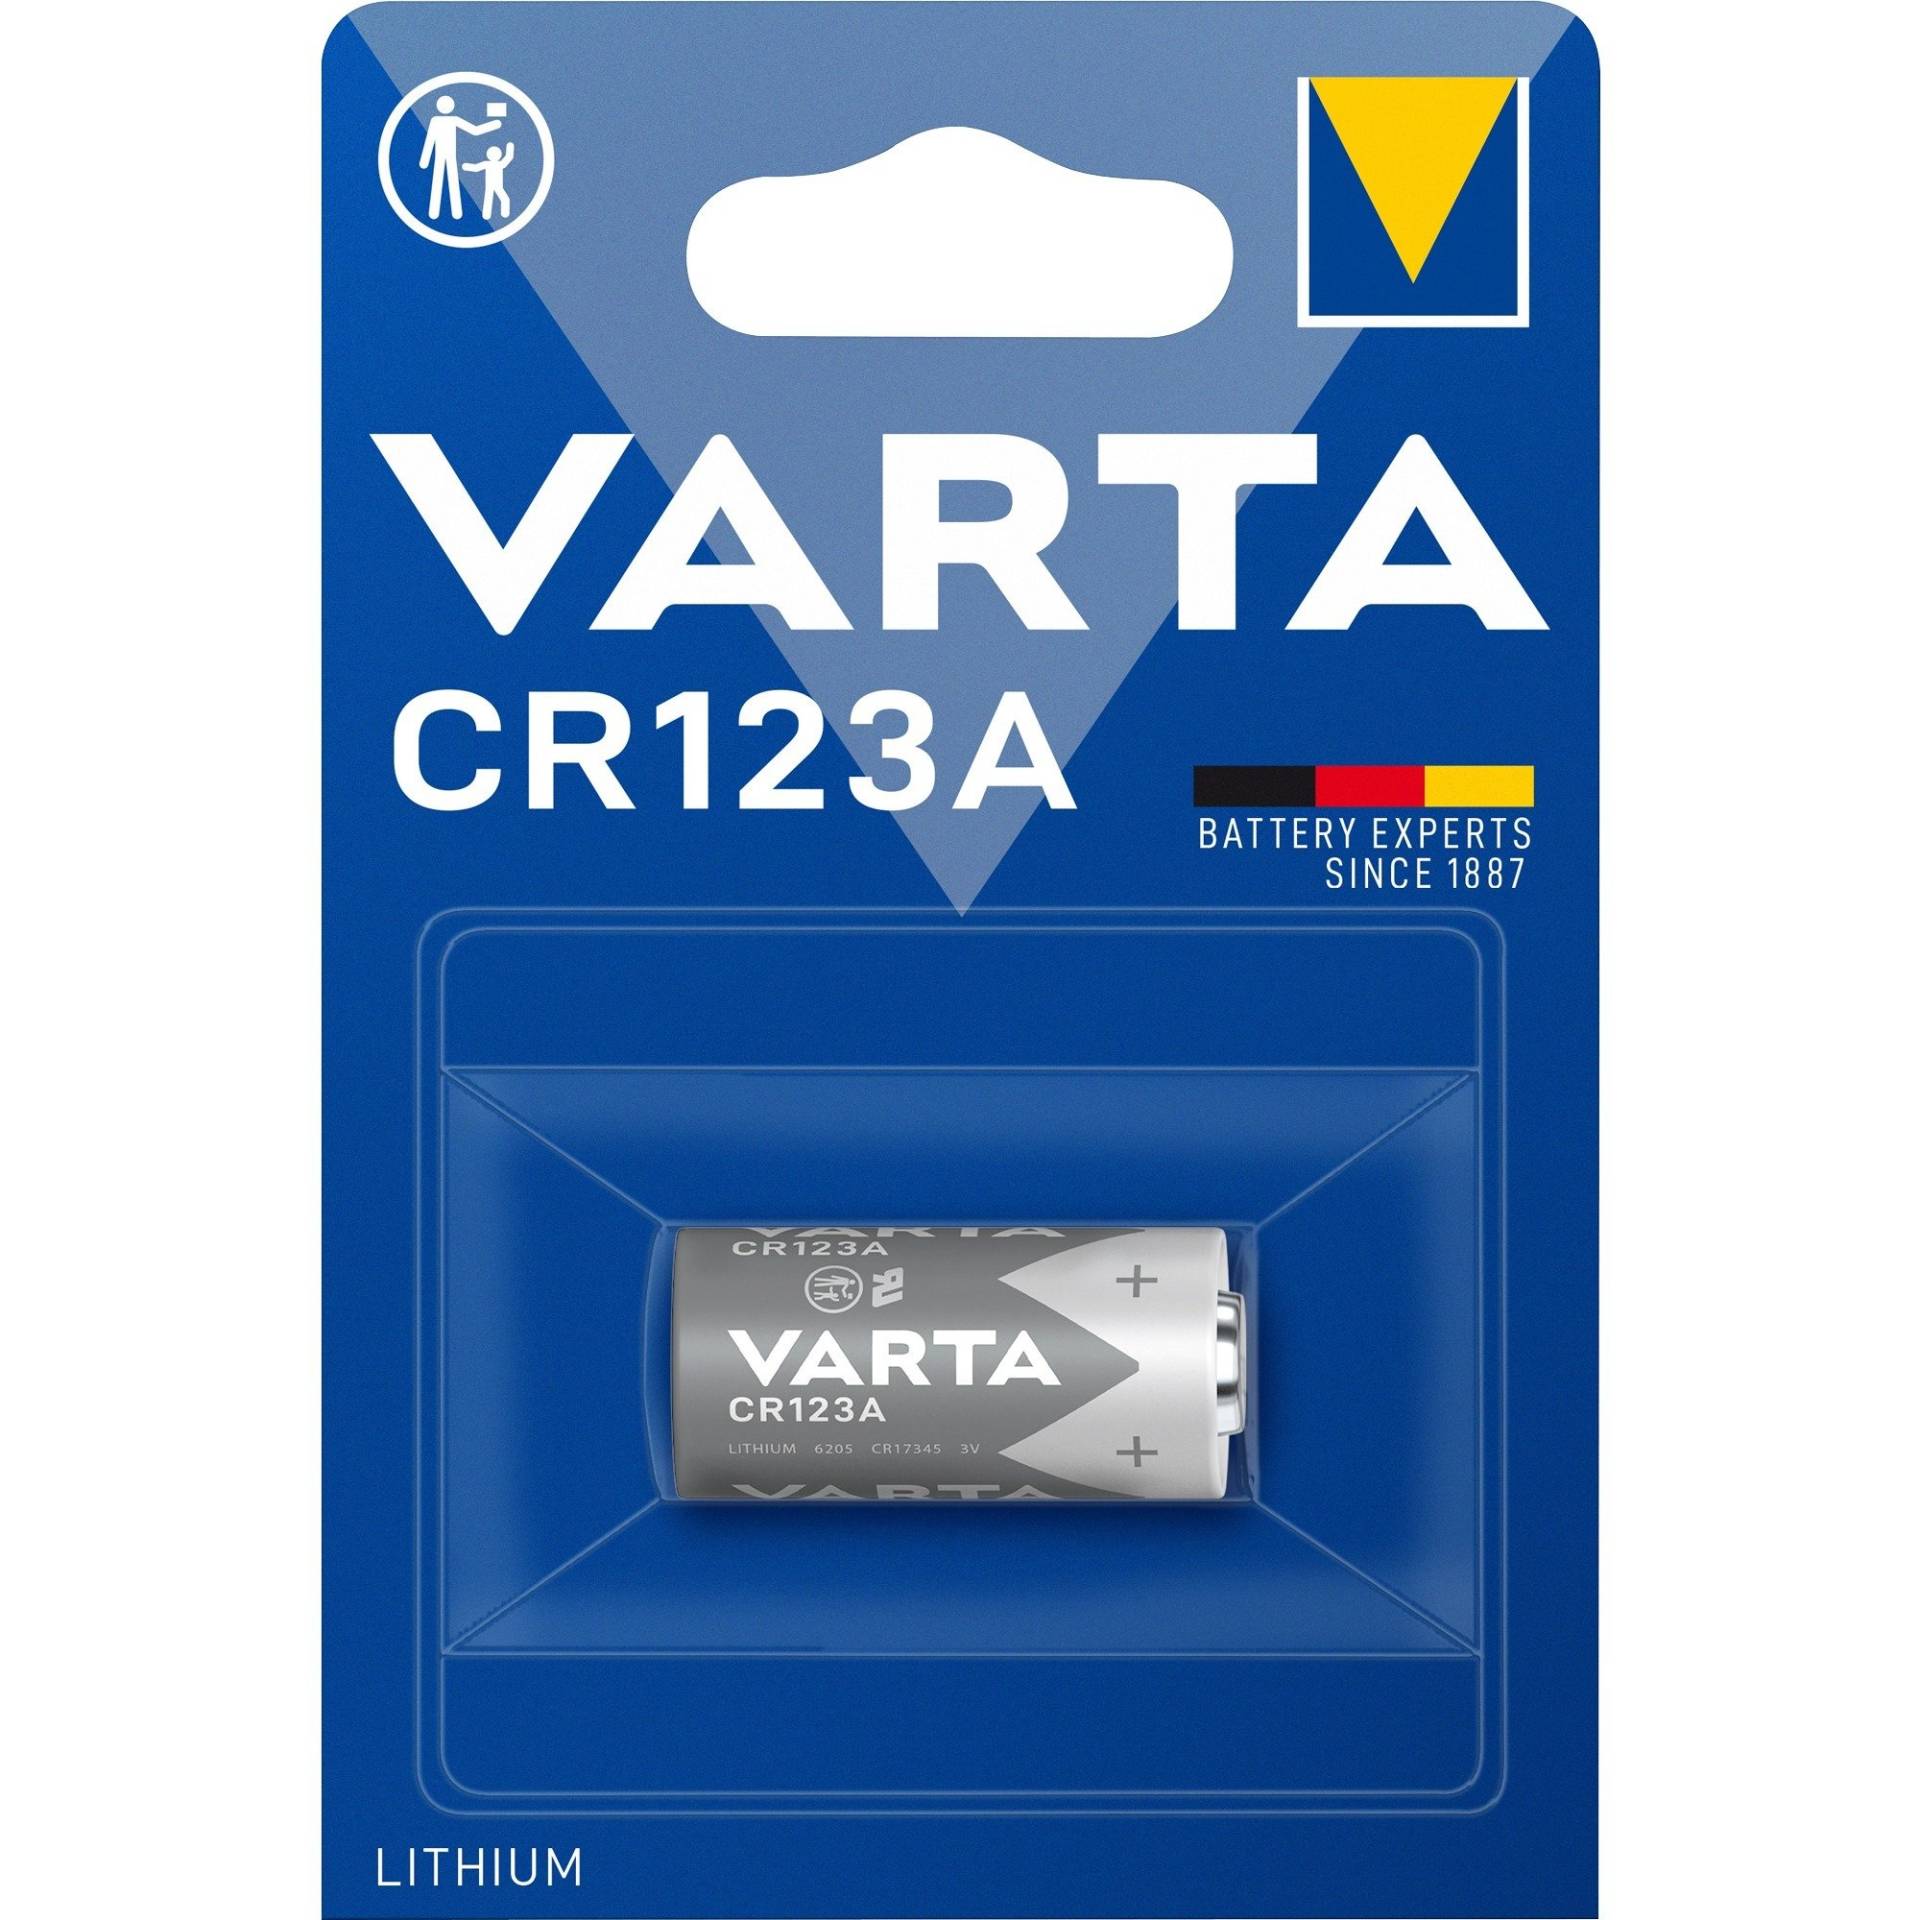 Lithium, Batterie von Varta